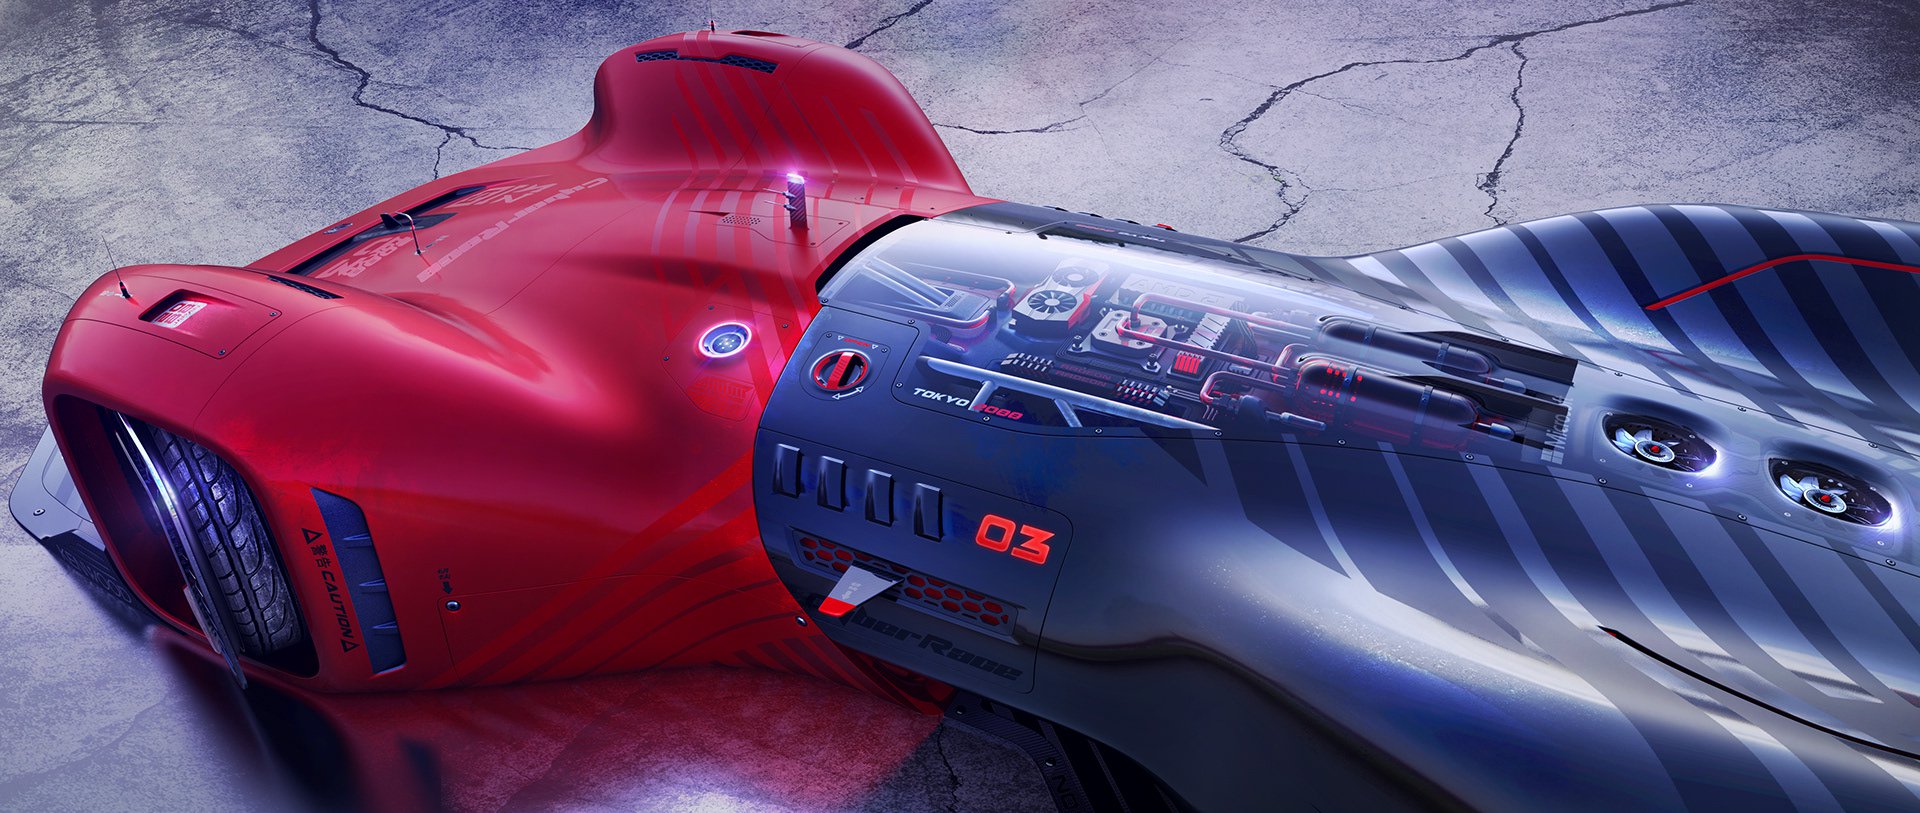 سيارة سباق هوندا 2088 تظهر في تصميم تخيلي جنوني 7